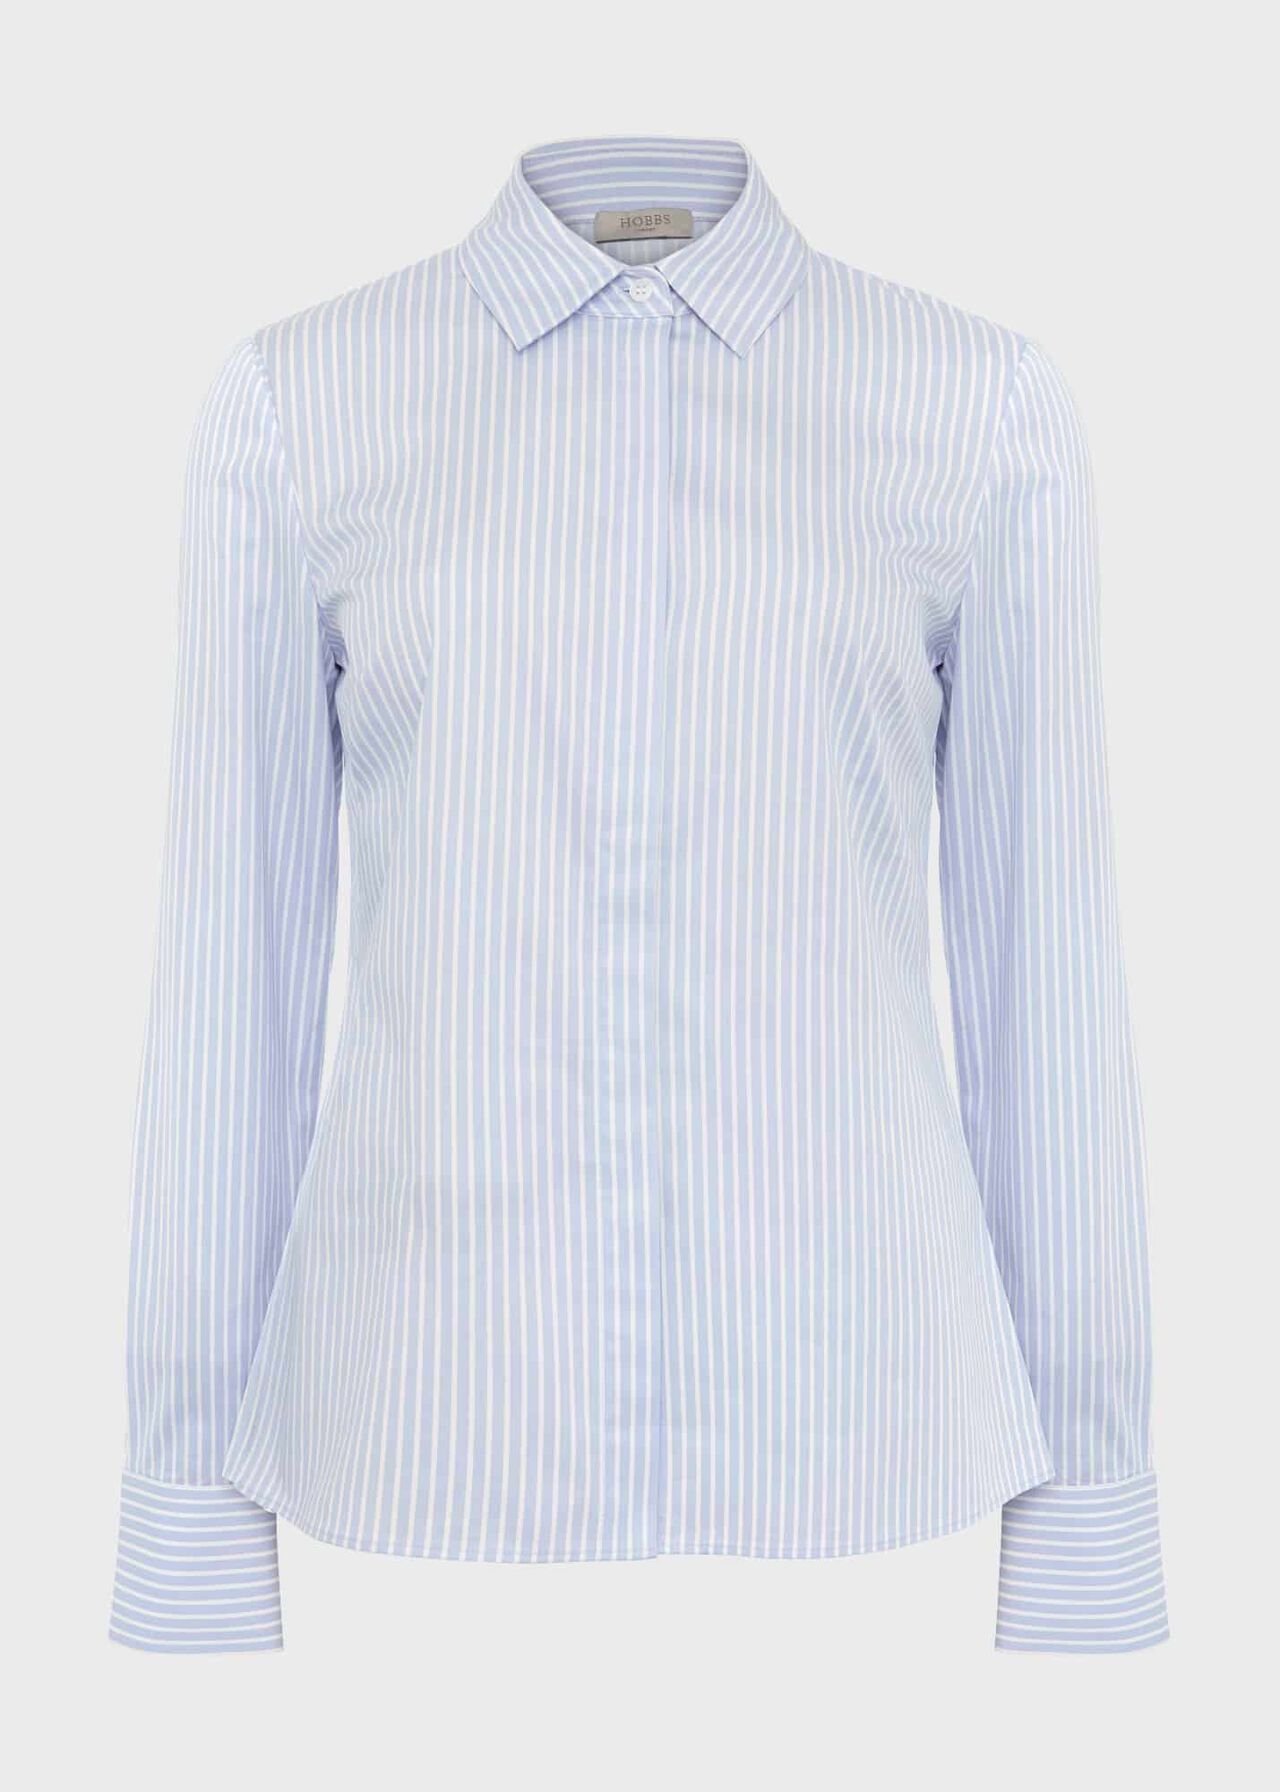 Victoria Cotton Blend Shirt, Pale Blue White, hi-res